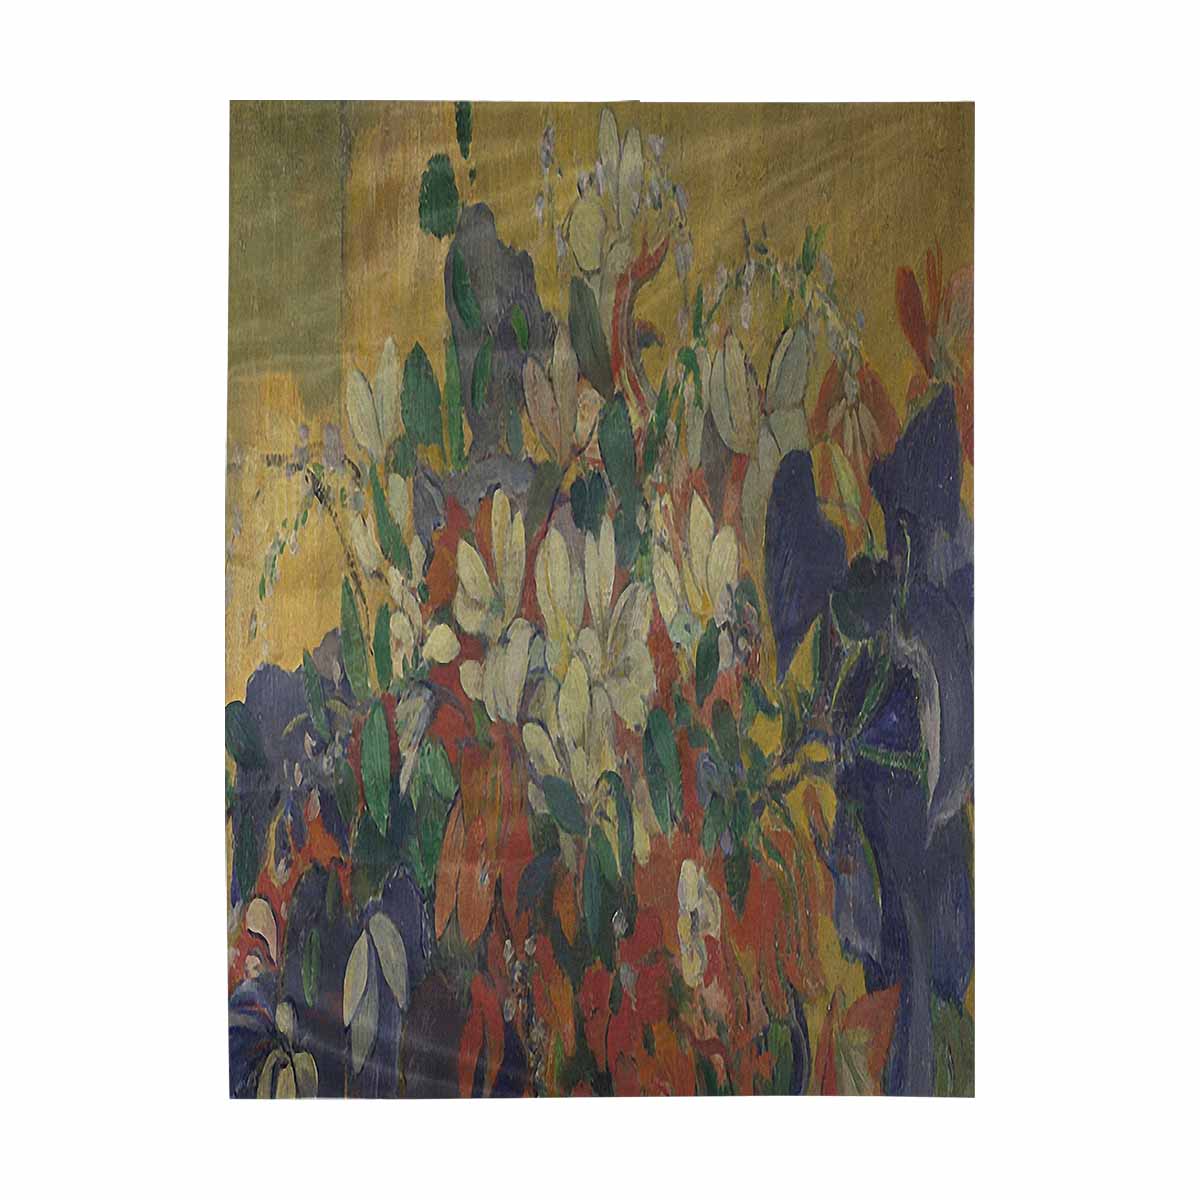 Vintage floral TAPESTRY, LARGE 60 x 80 in, Vertical, Design 10